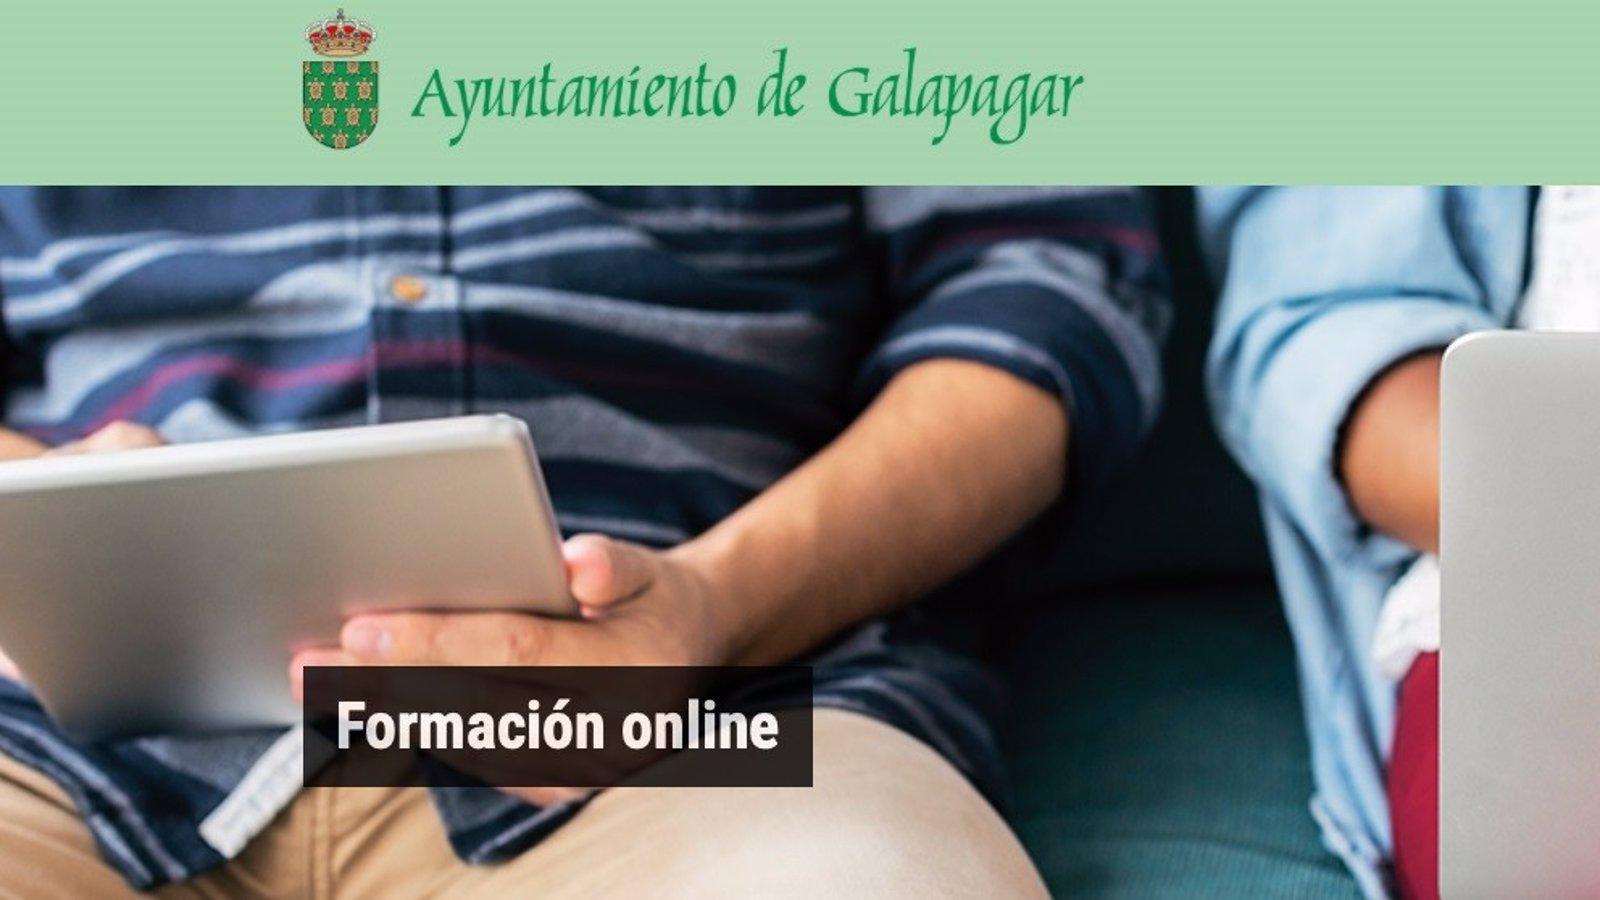 Un nuevo portal de Galapagar dará formación gratuita a los vecinos con 150 cursos online